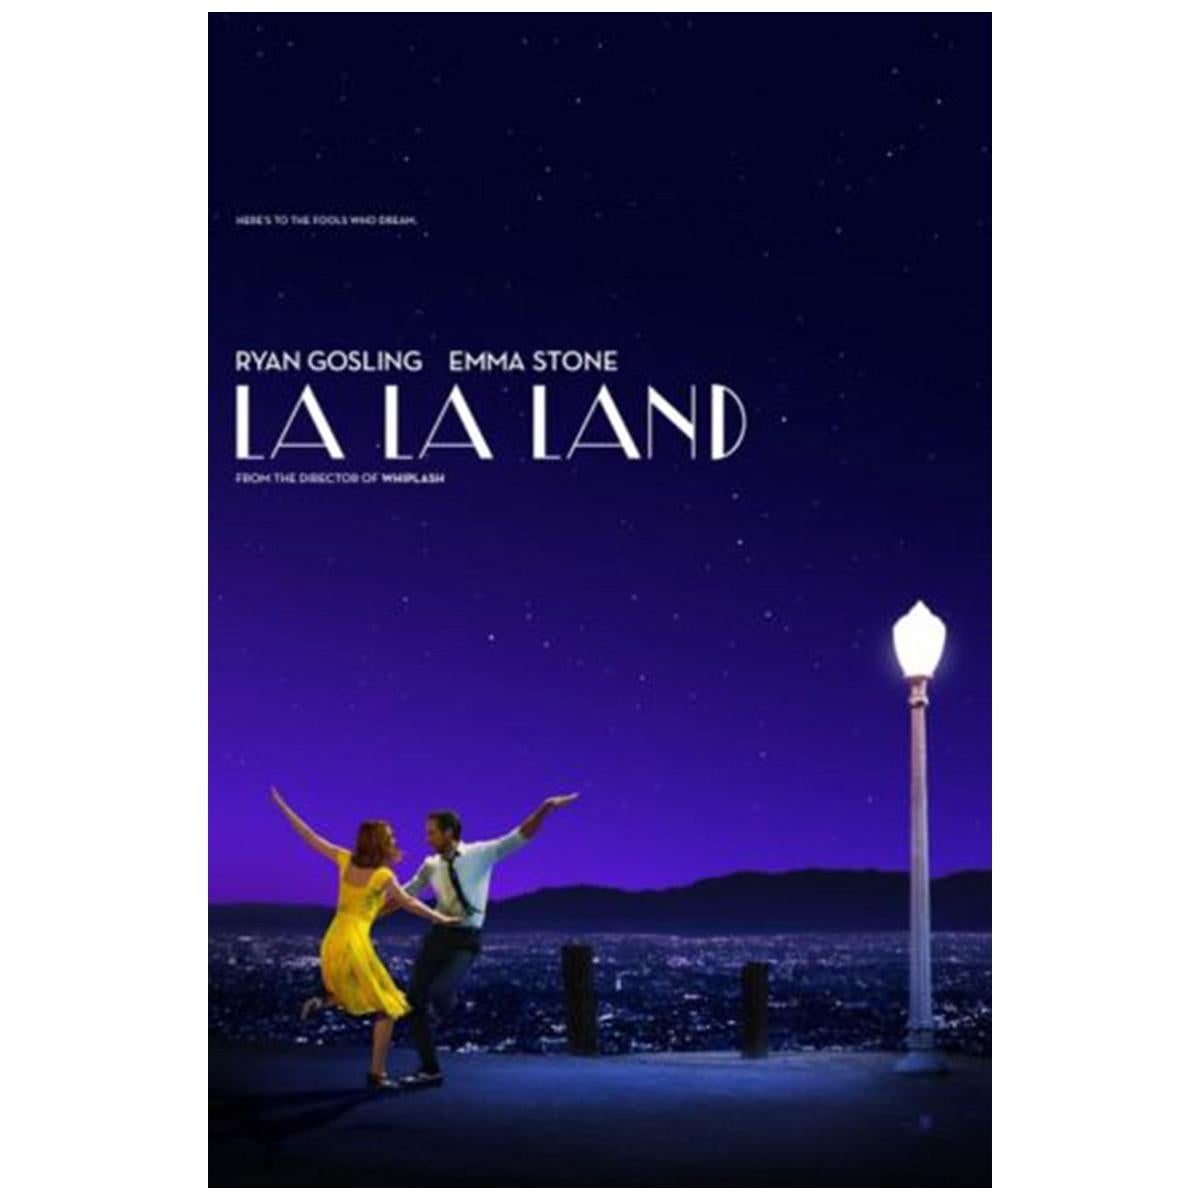 "La La Land" 2016 Poster For Sale